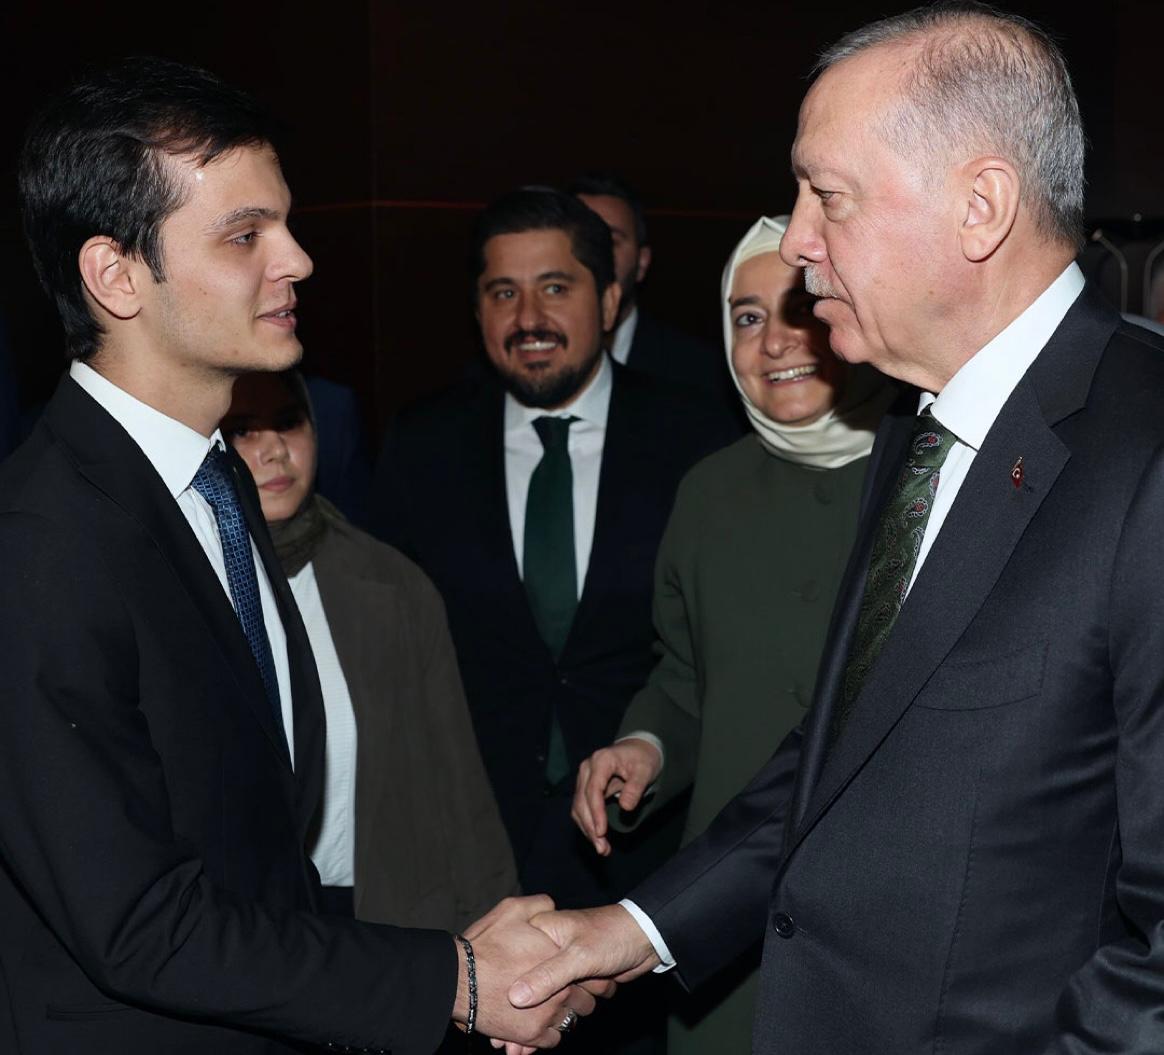 Cumhurbaşkanımız Recep Tayyip Erdoğan, Avrupa Avrupa Wushu Kung Fu Şampiyonası'nda Filistin bayrağı açarak dabke dansı yaptığı için şampiyonluğu iptal edilen Türk sporcu Necmettin Erbakan Akyüz ile görüştü